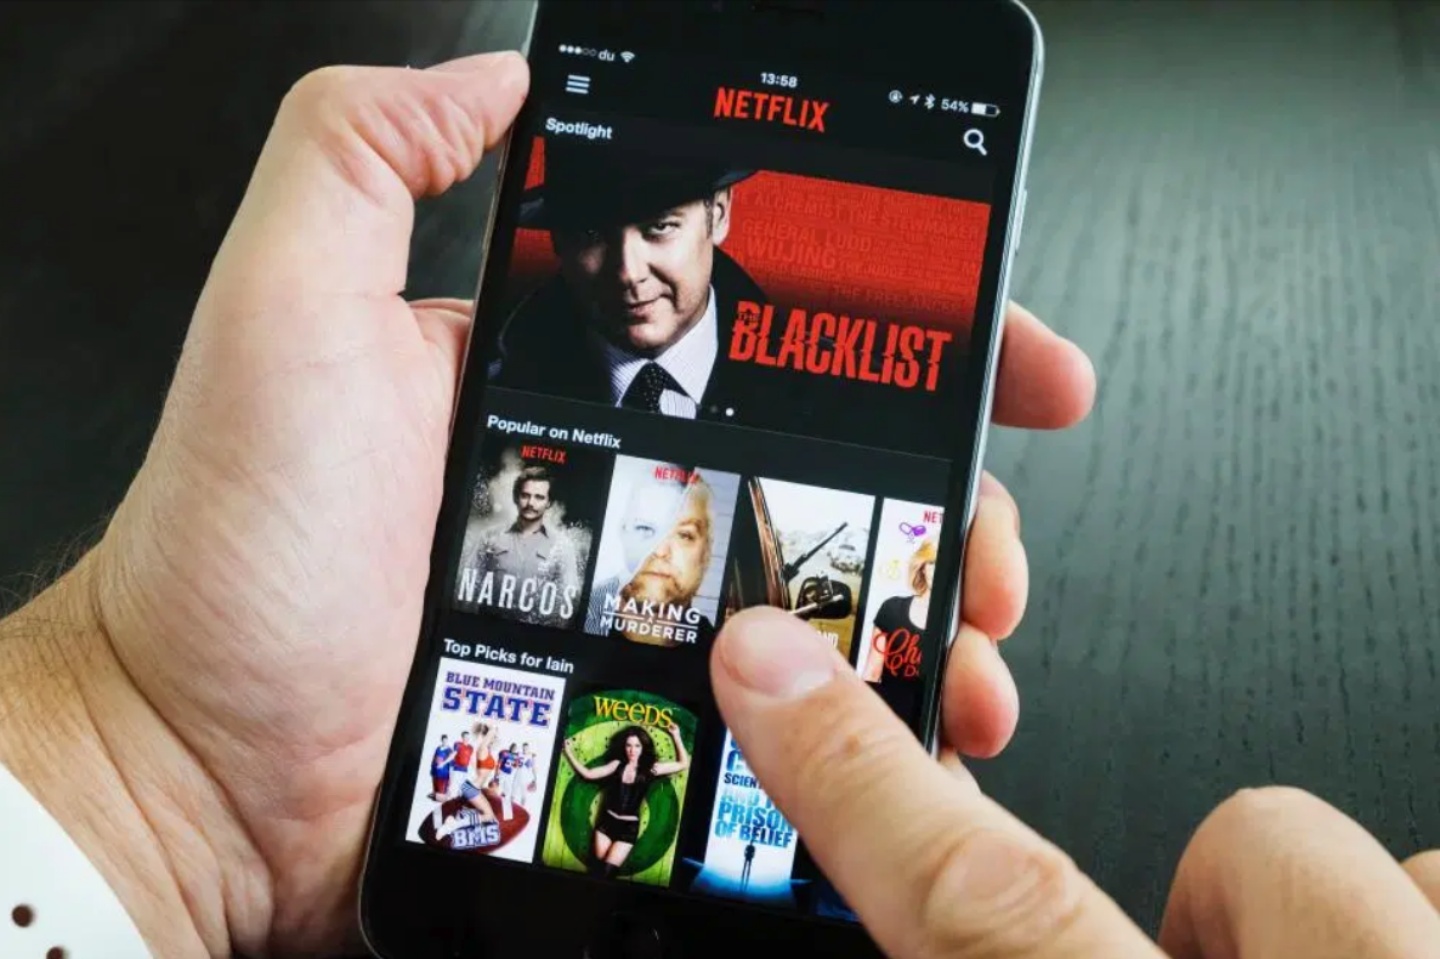 Netflix 似乎有意調整用戶帳號共享的規範，未來可能無法三五好友共用一組帳號了？